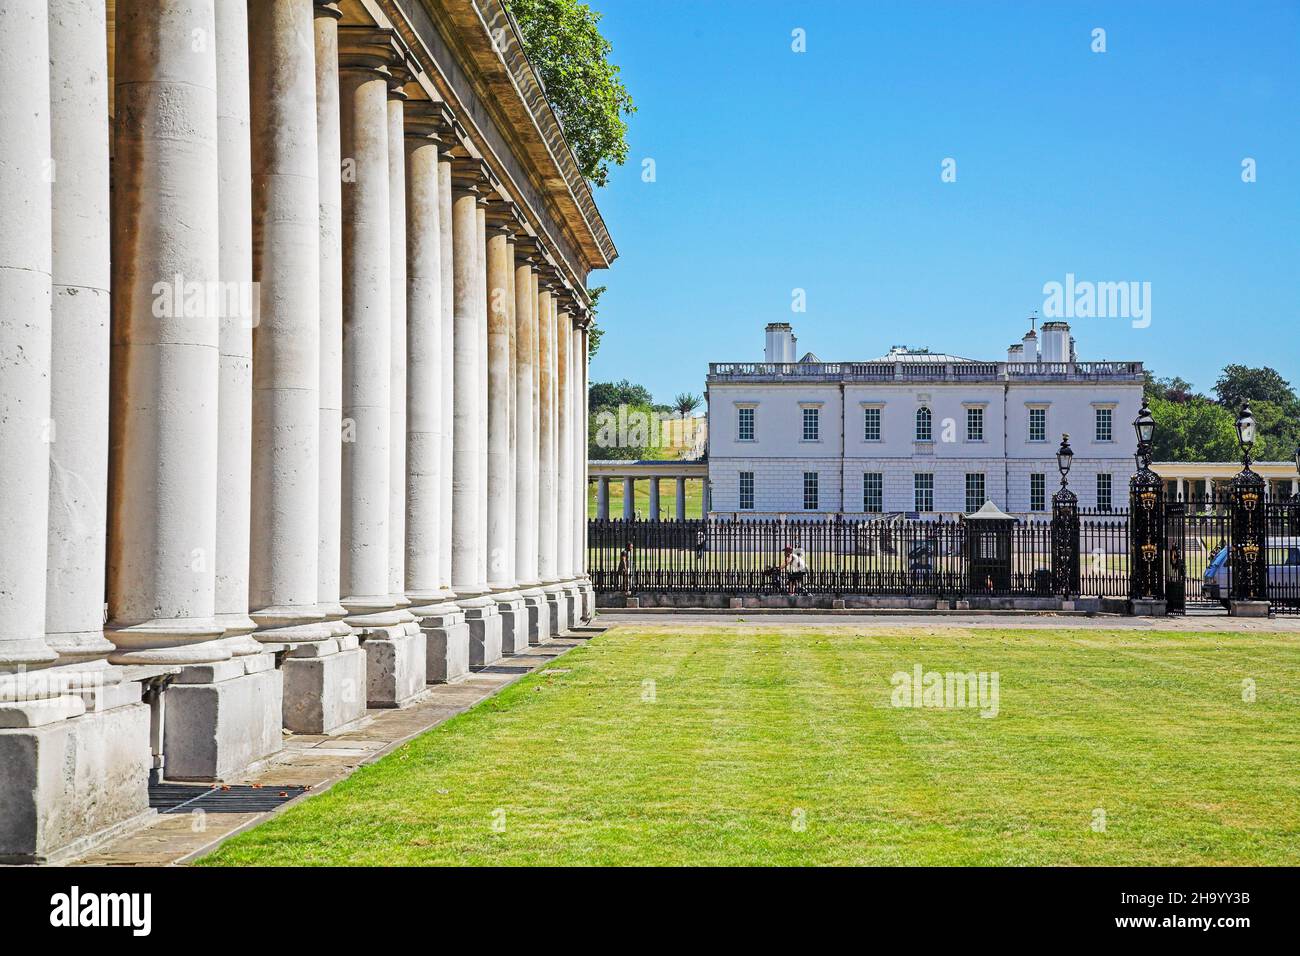 LONDRA, REGNO UNITO - Apr 03, 2018: Un colonnato georgiano con la Casa della Regina in lontananza a Londra, nel Regno Unito Foto Stock